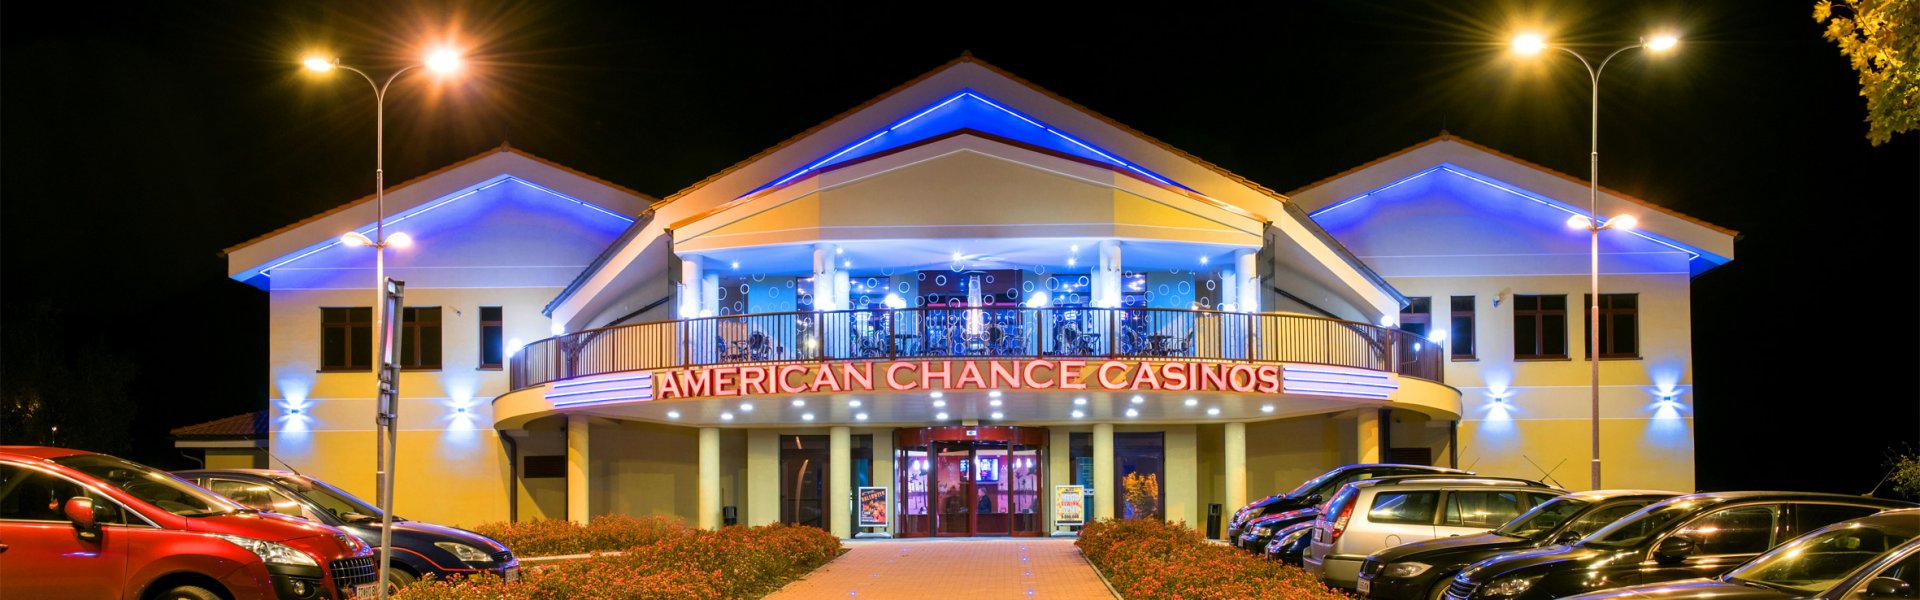 10 Ecu Prämie triple chance spielen kostenlos Abzüglich Einzahlung Kasino